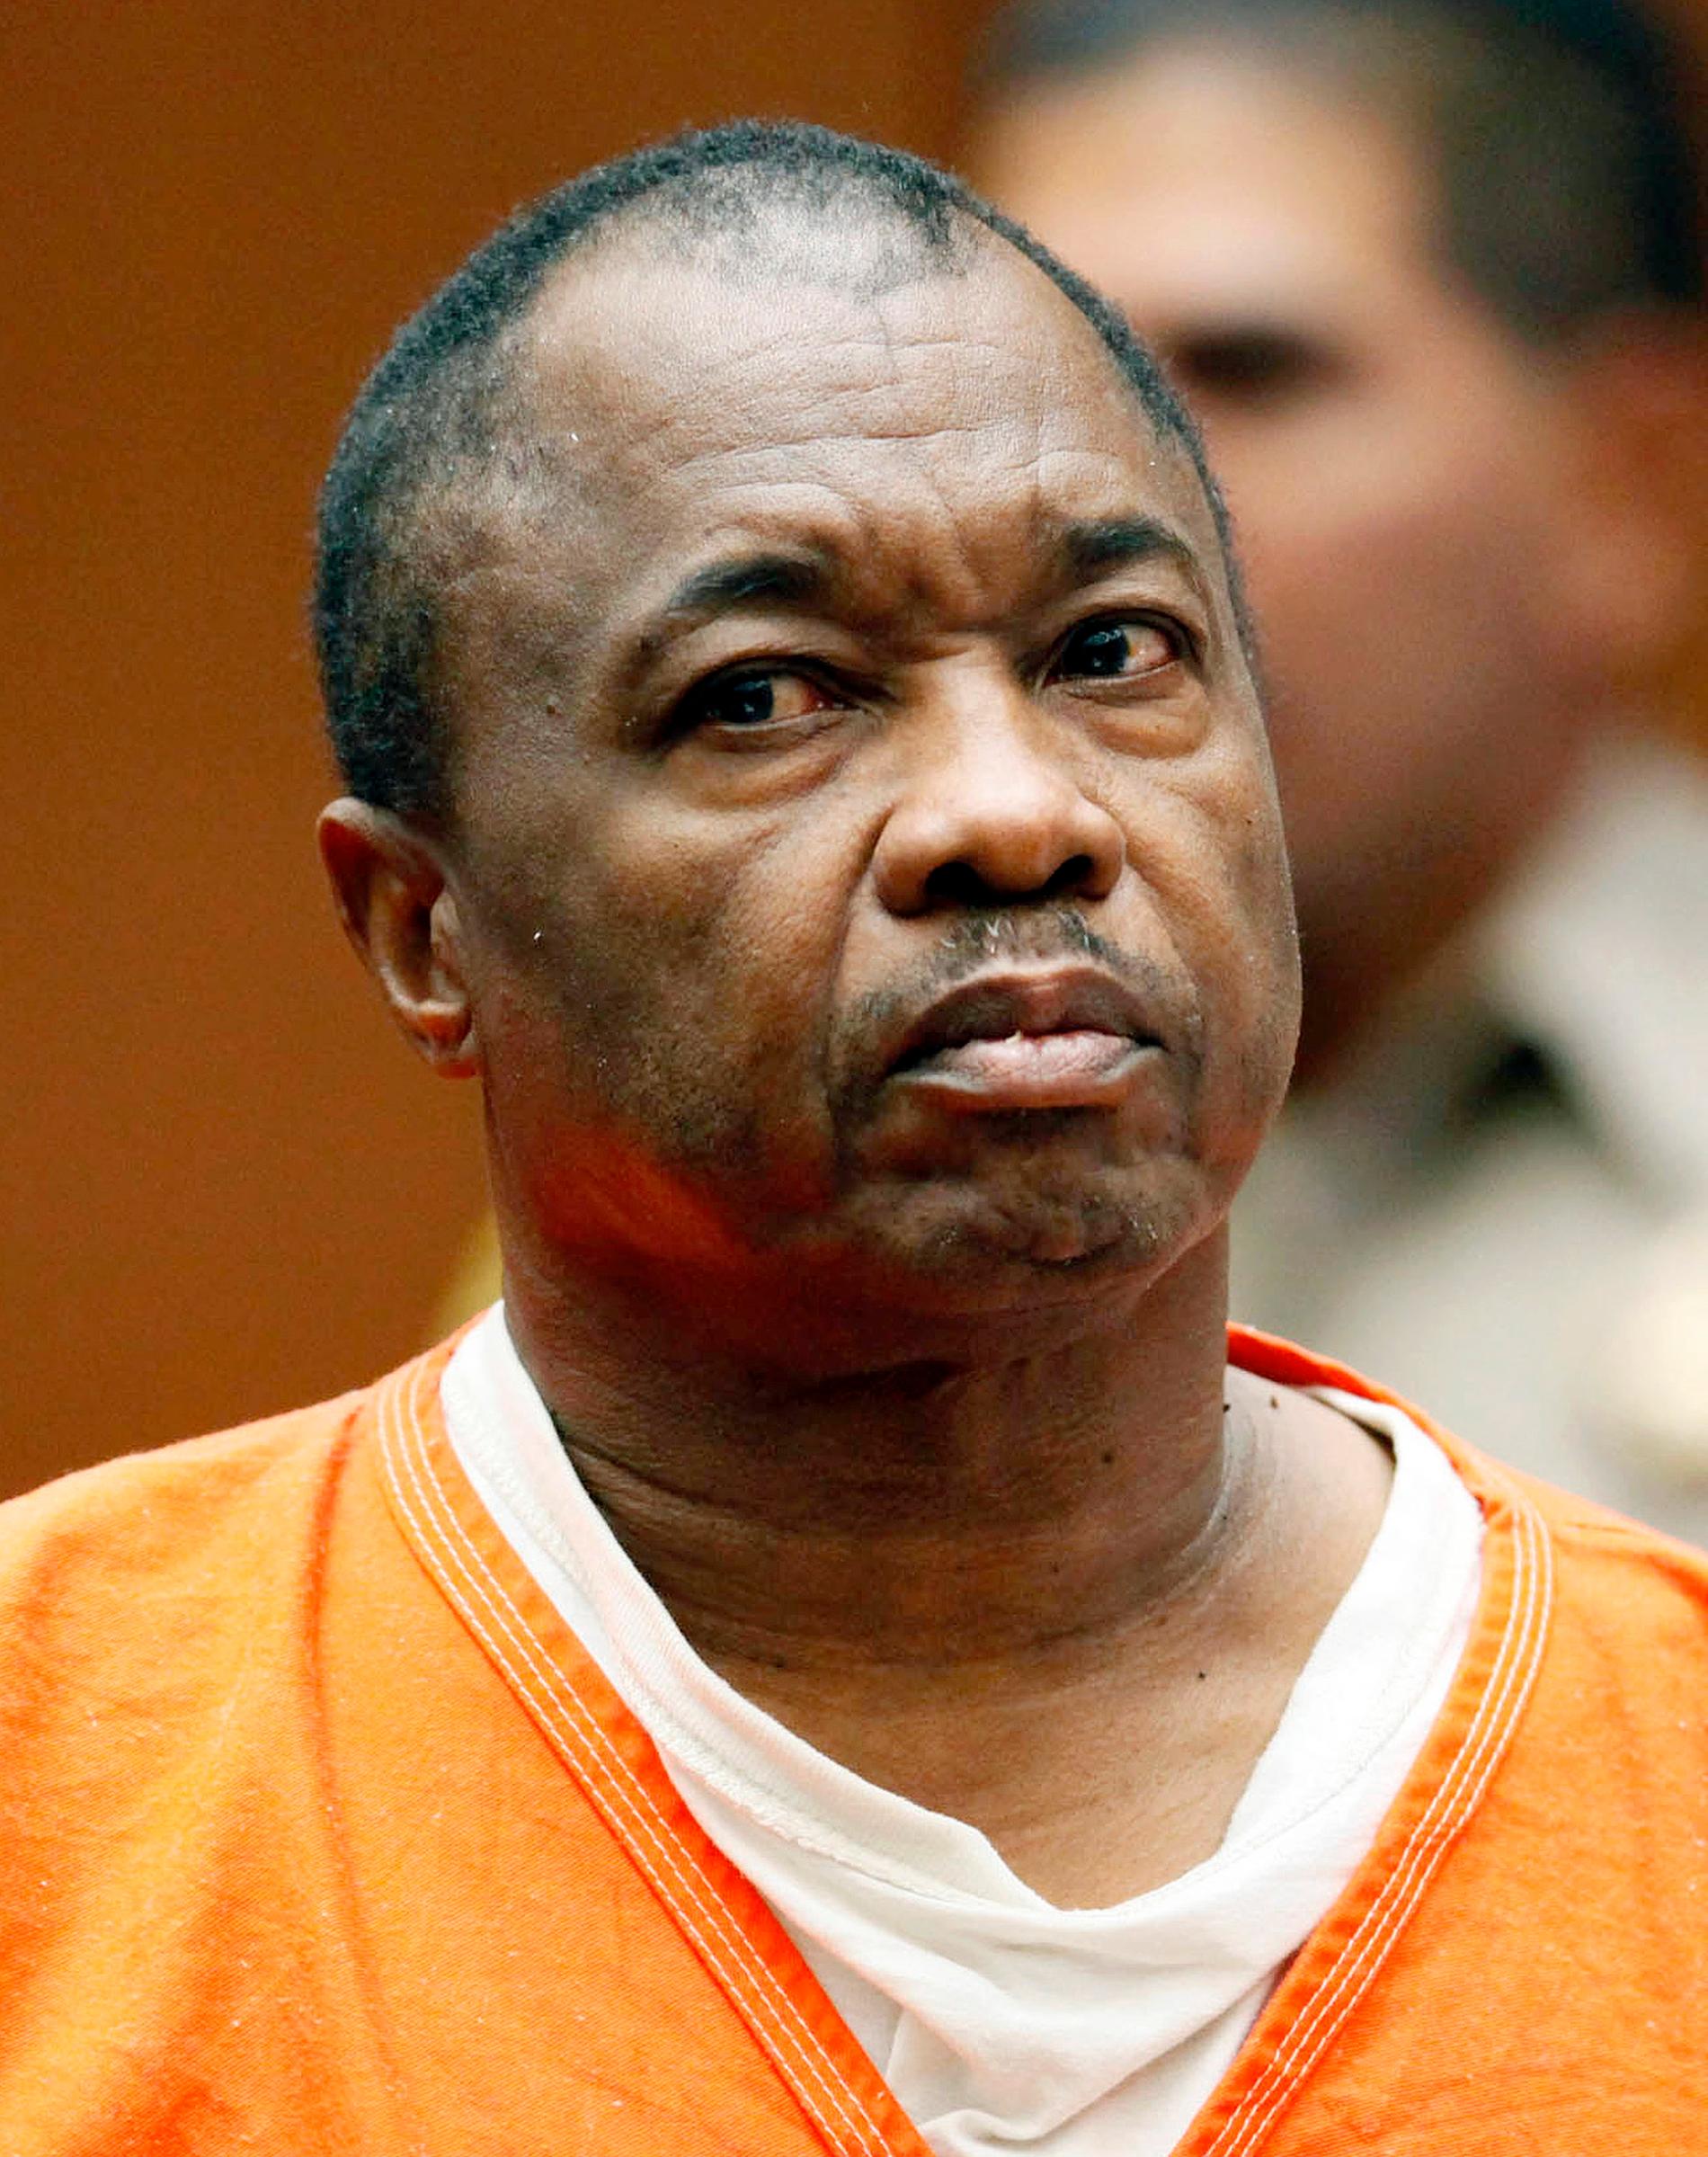 Lonnie Franklin Jr, även känd som Grim Sleeper, misstänks ha mördat minst 25 flickor och kvinnor sedan 1985. Nu döms han till döden.